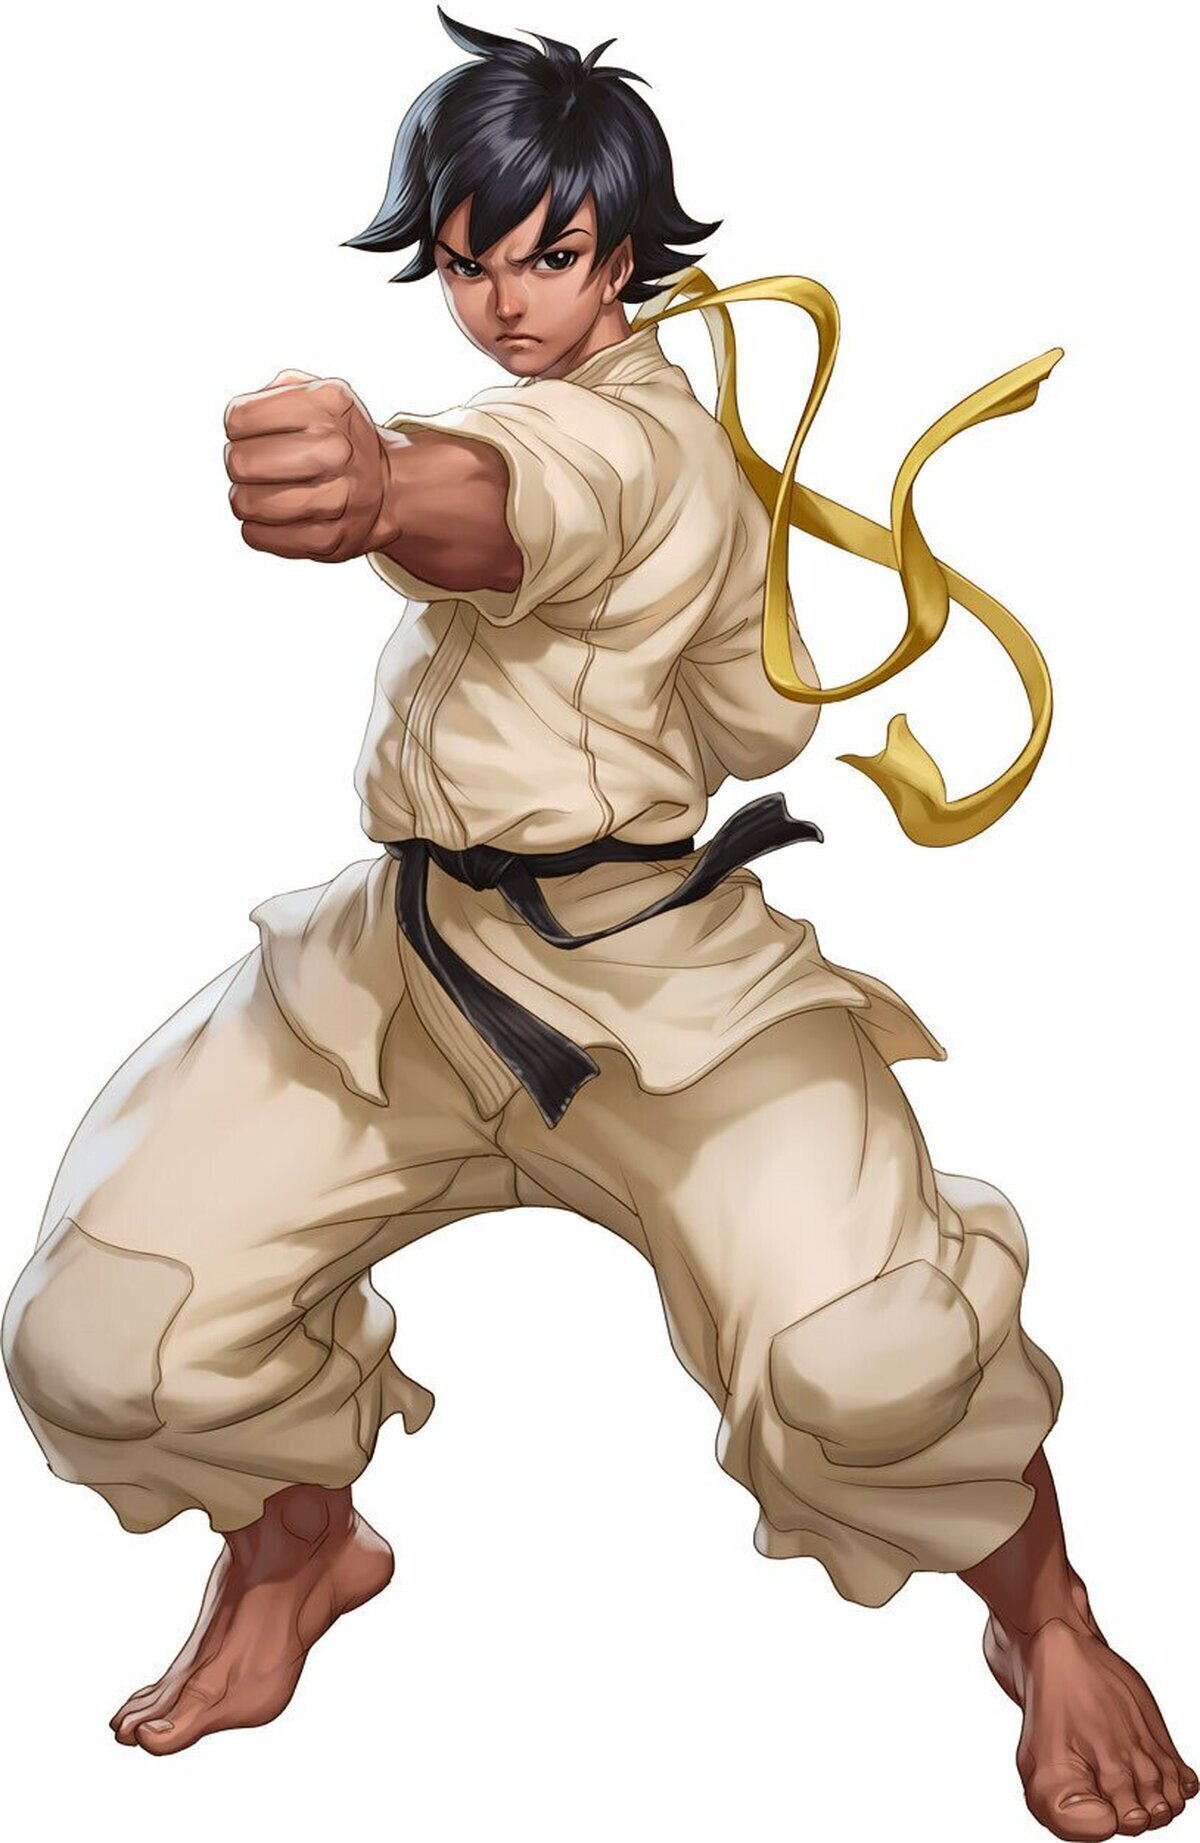 Top 10 personajes que quiero volver a ver en Street Fighter V